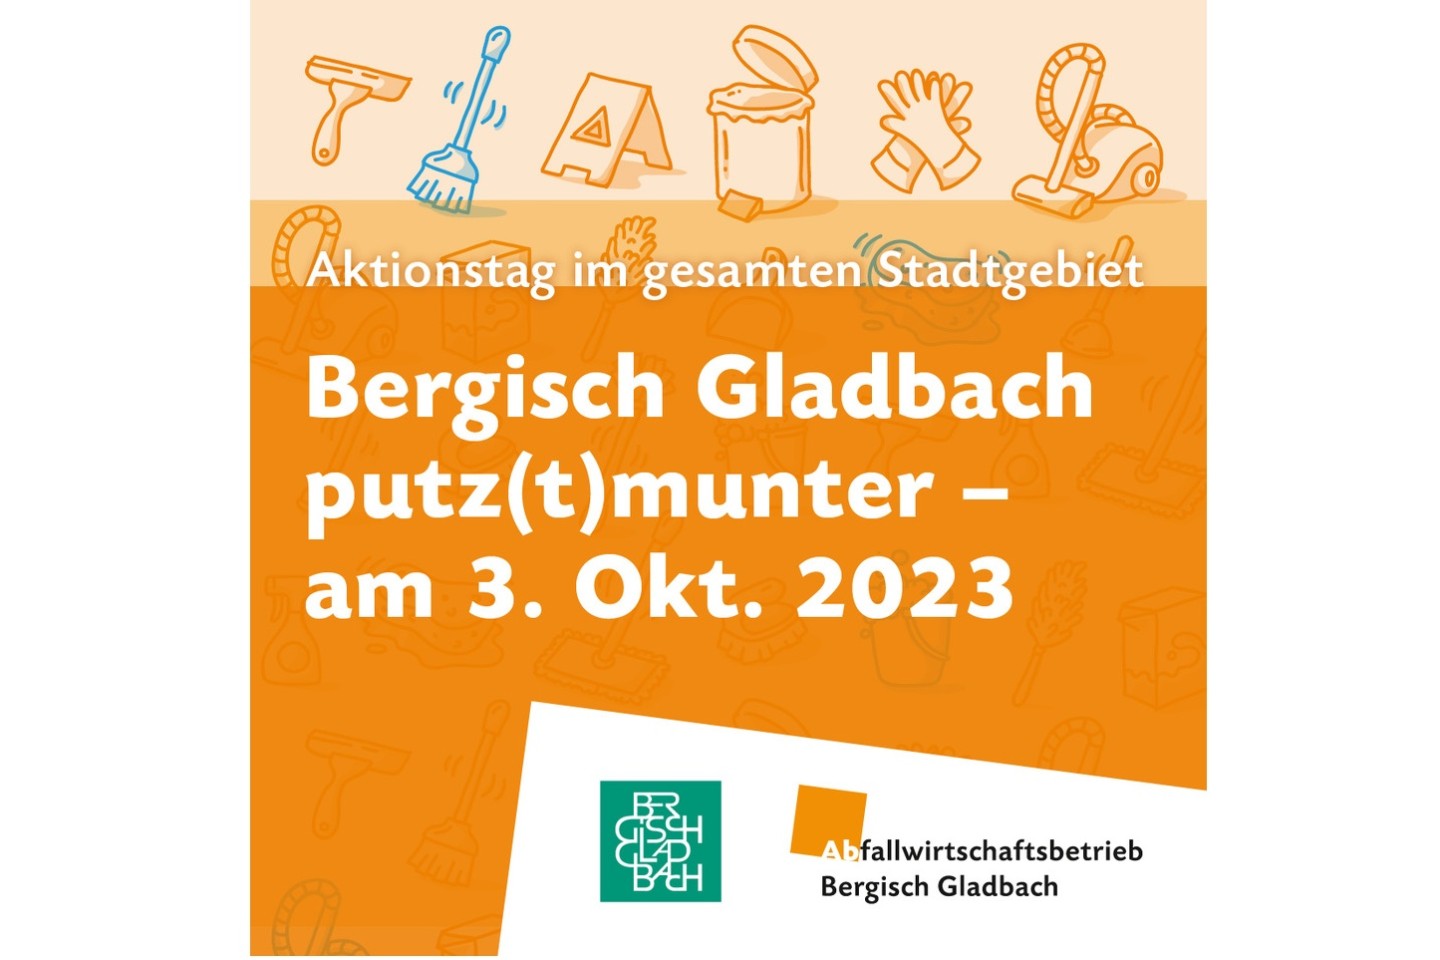 Bergisch Gladbach putz(t)munter am 03